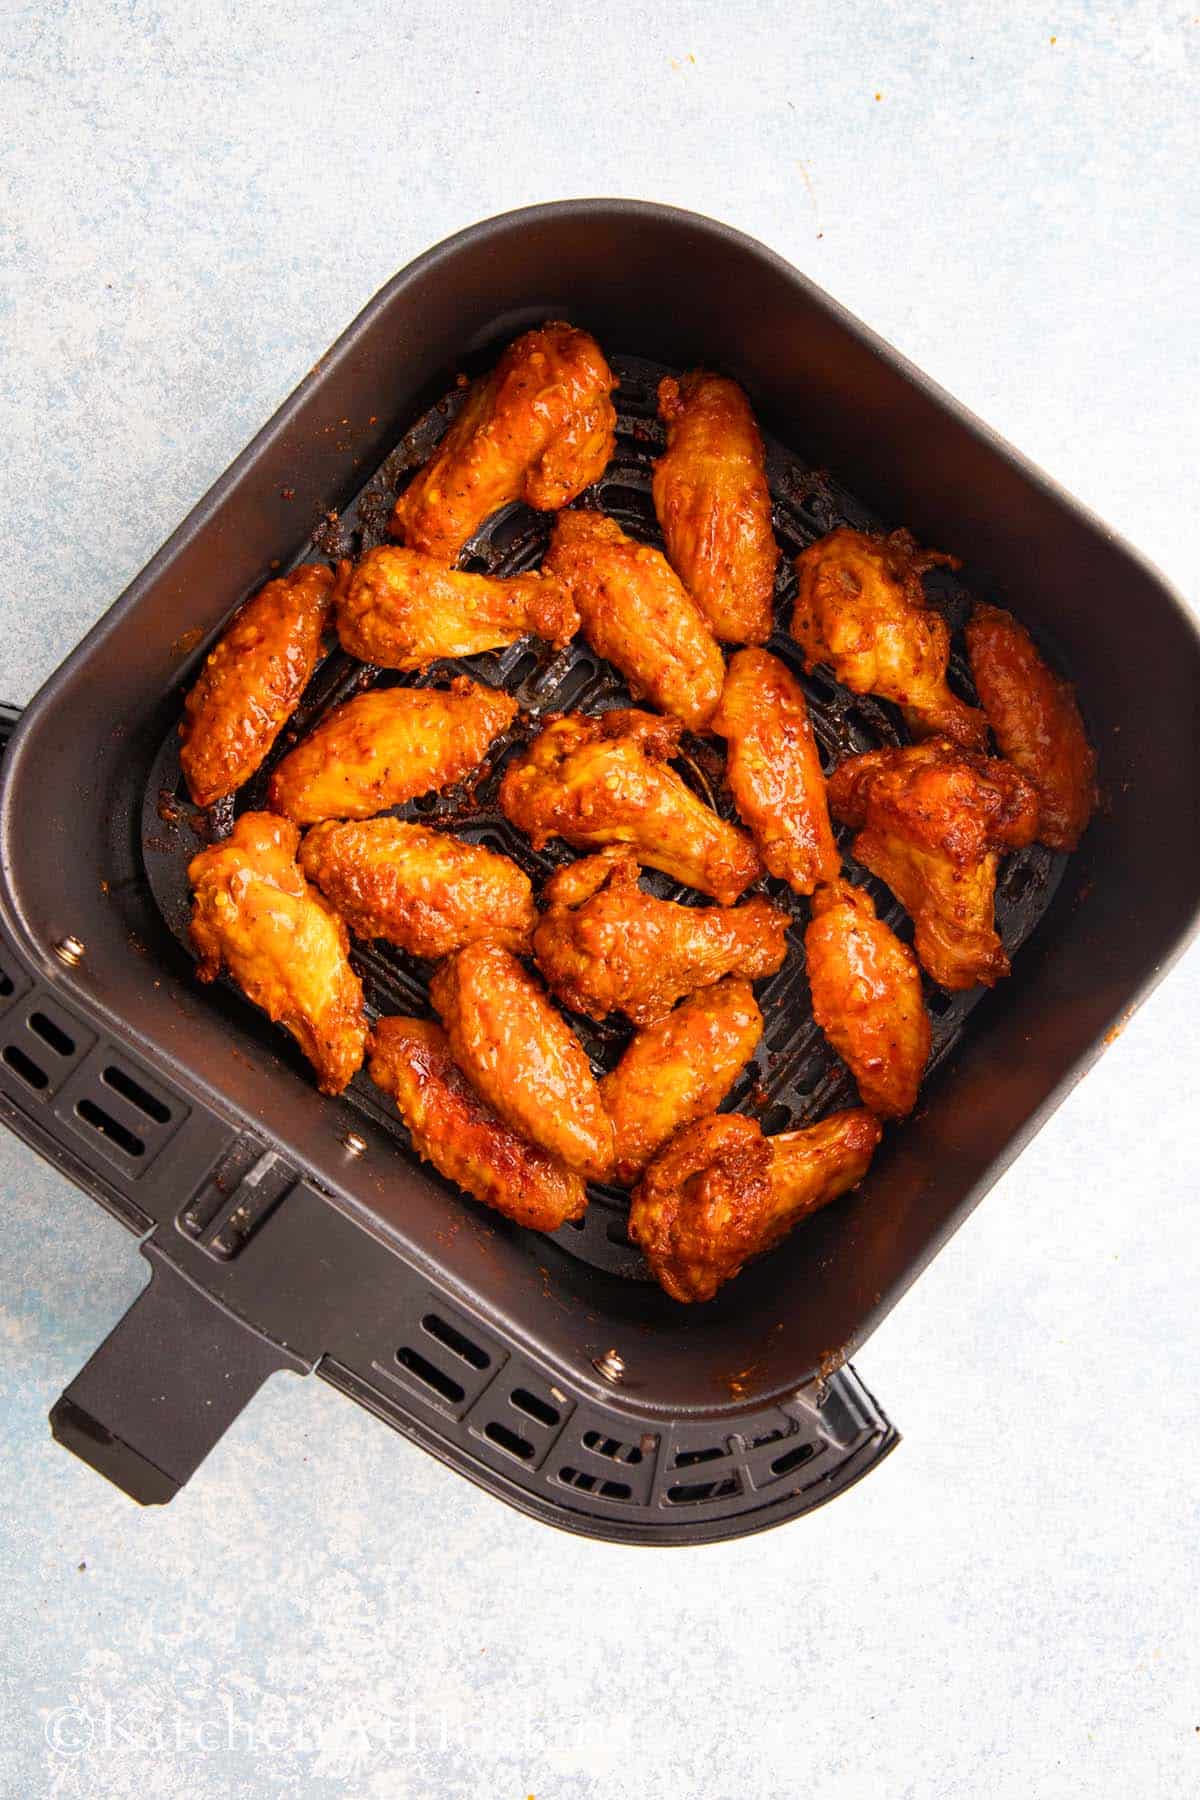 spicy hot wings in a air fryer basket.